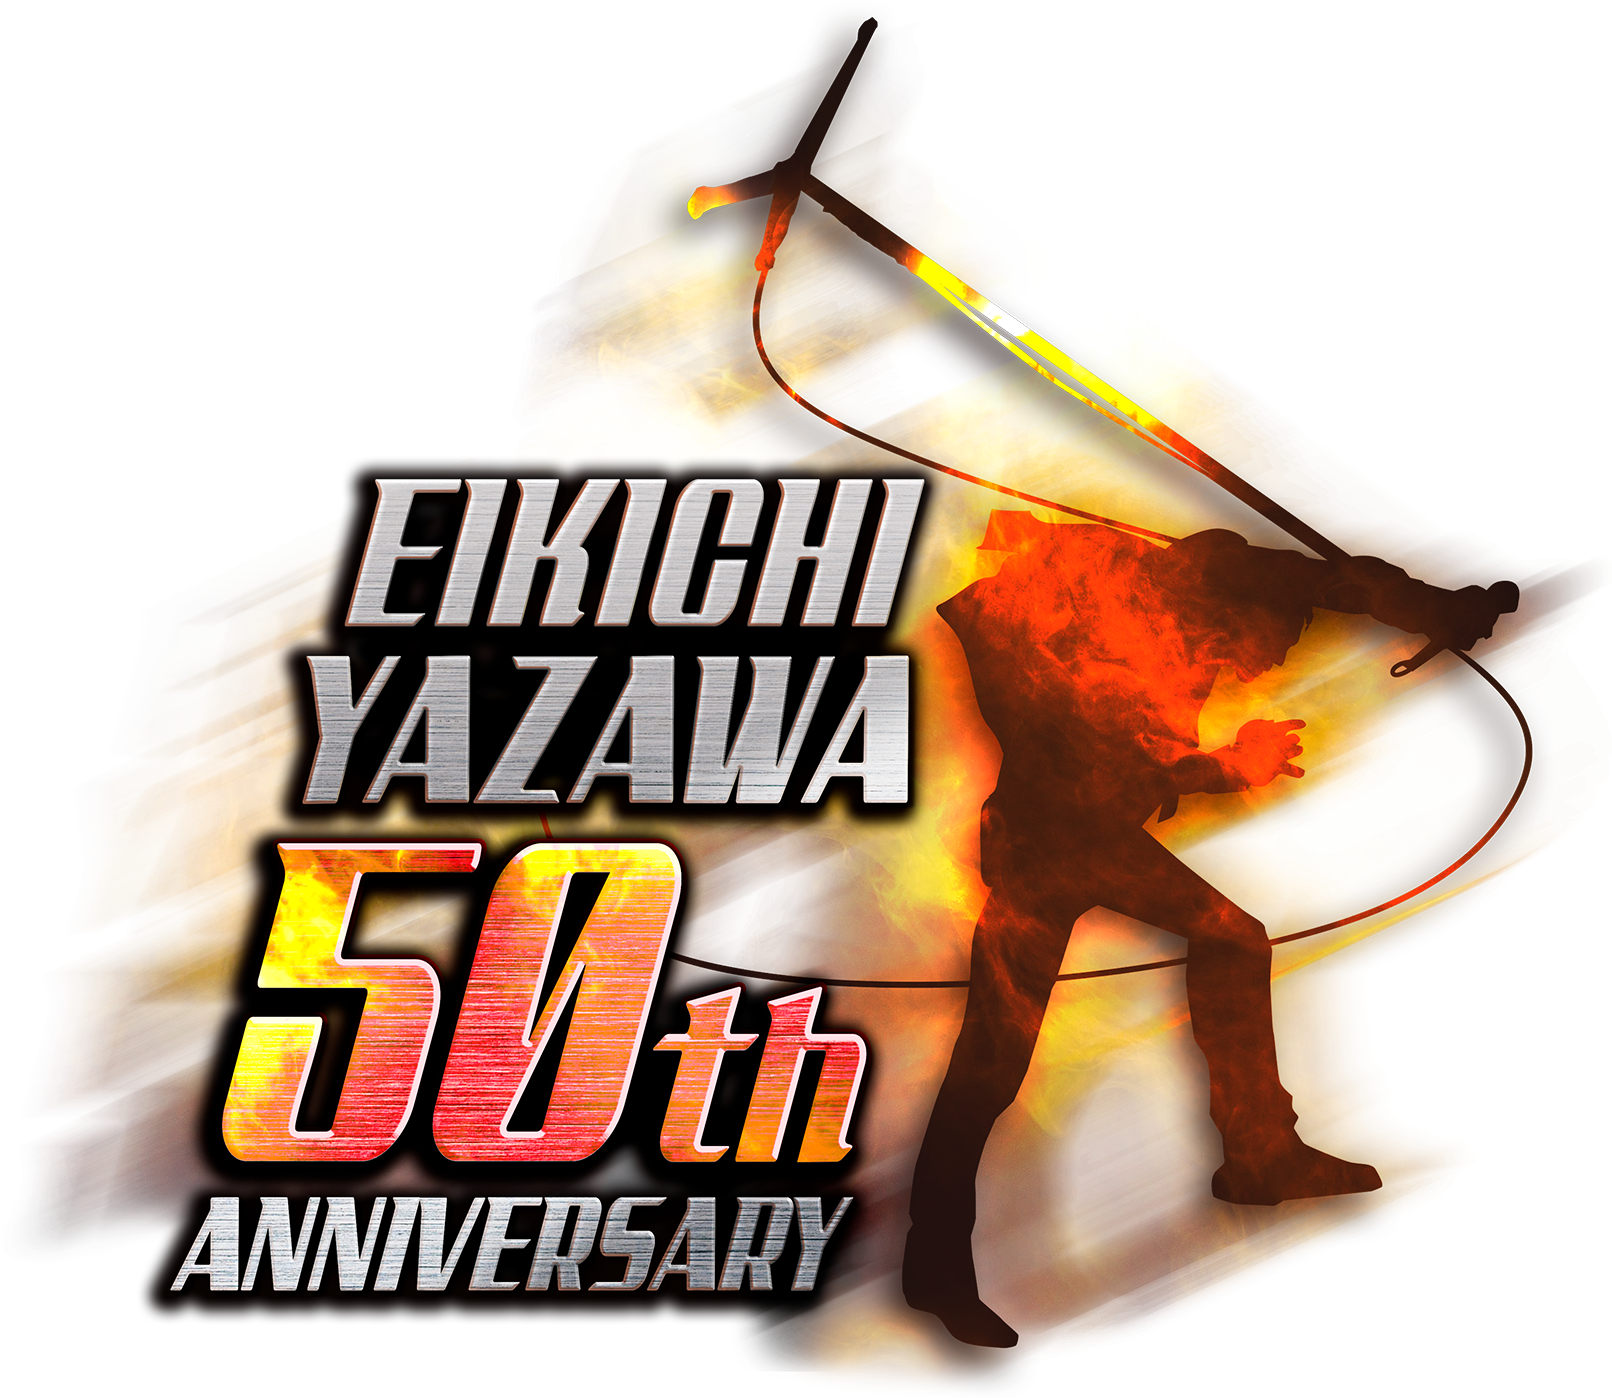 EIKICHI YAZAWA 50th ANNIVERSARY